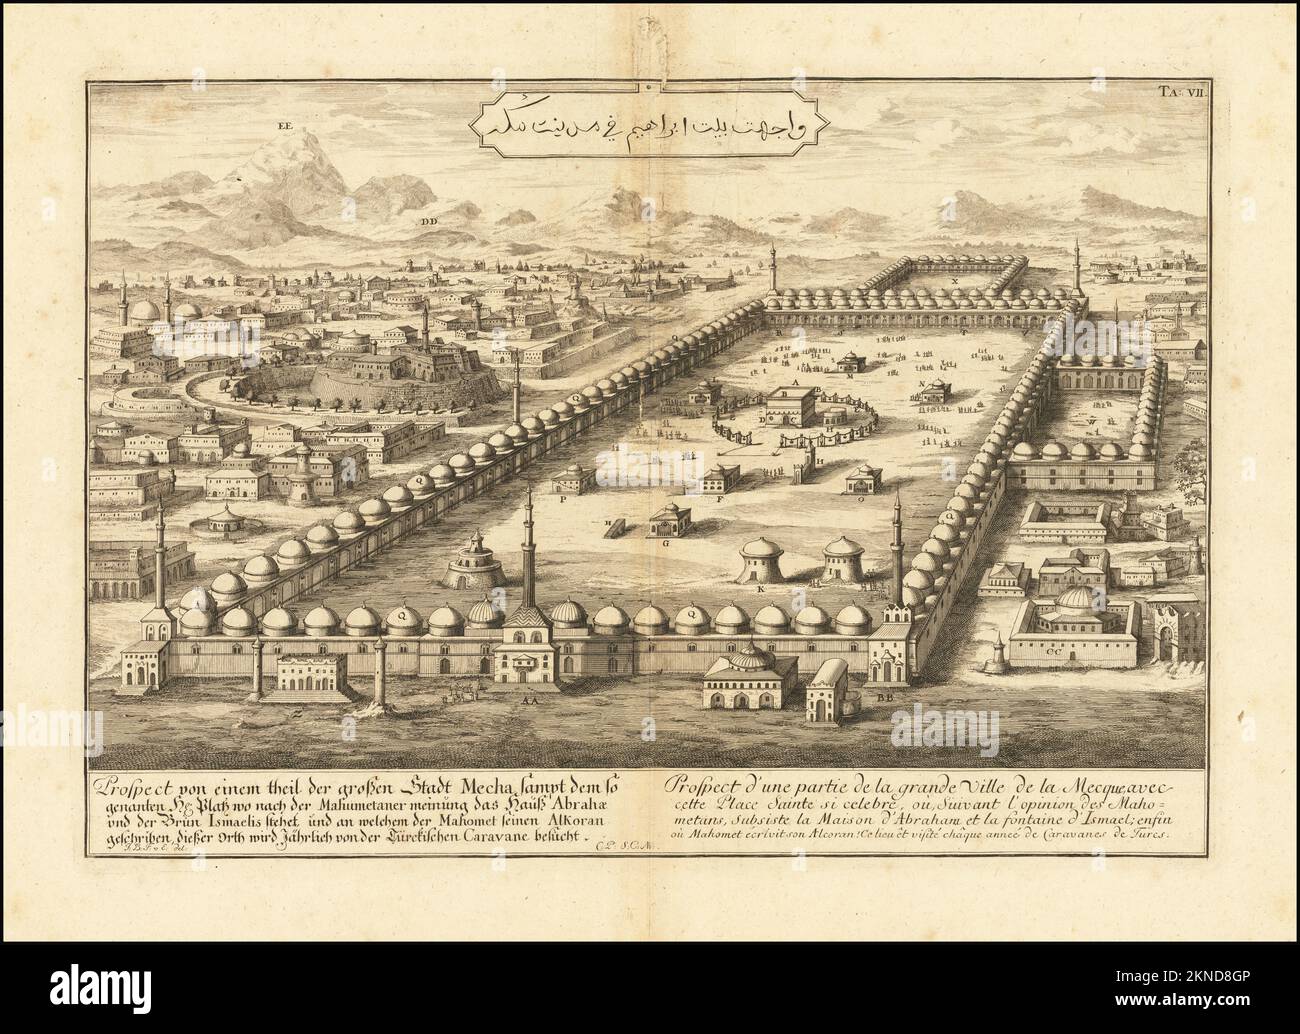 Plan de ville vintage de la Mecque et de la région autour de lui à partir de 18th siècle. Les cartes sont magnifiquement illustrées à la main et gravées montrant la ville à l'époque. Banque D'Images